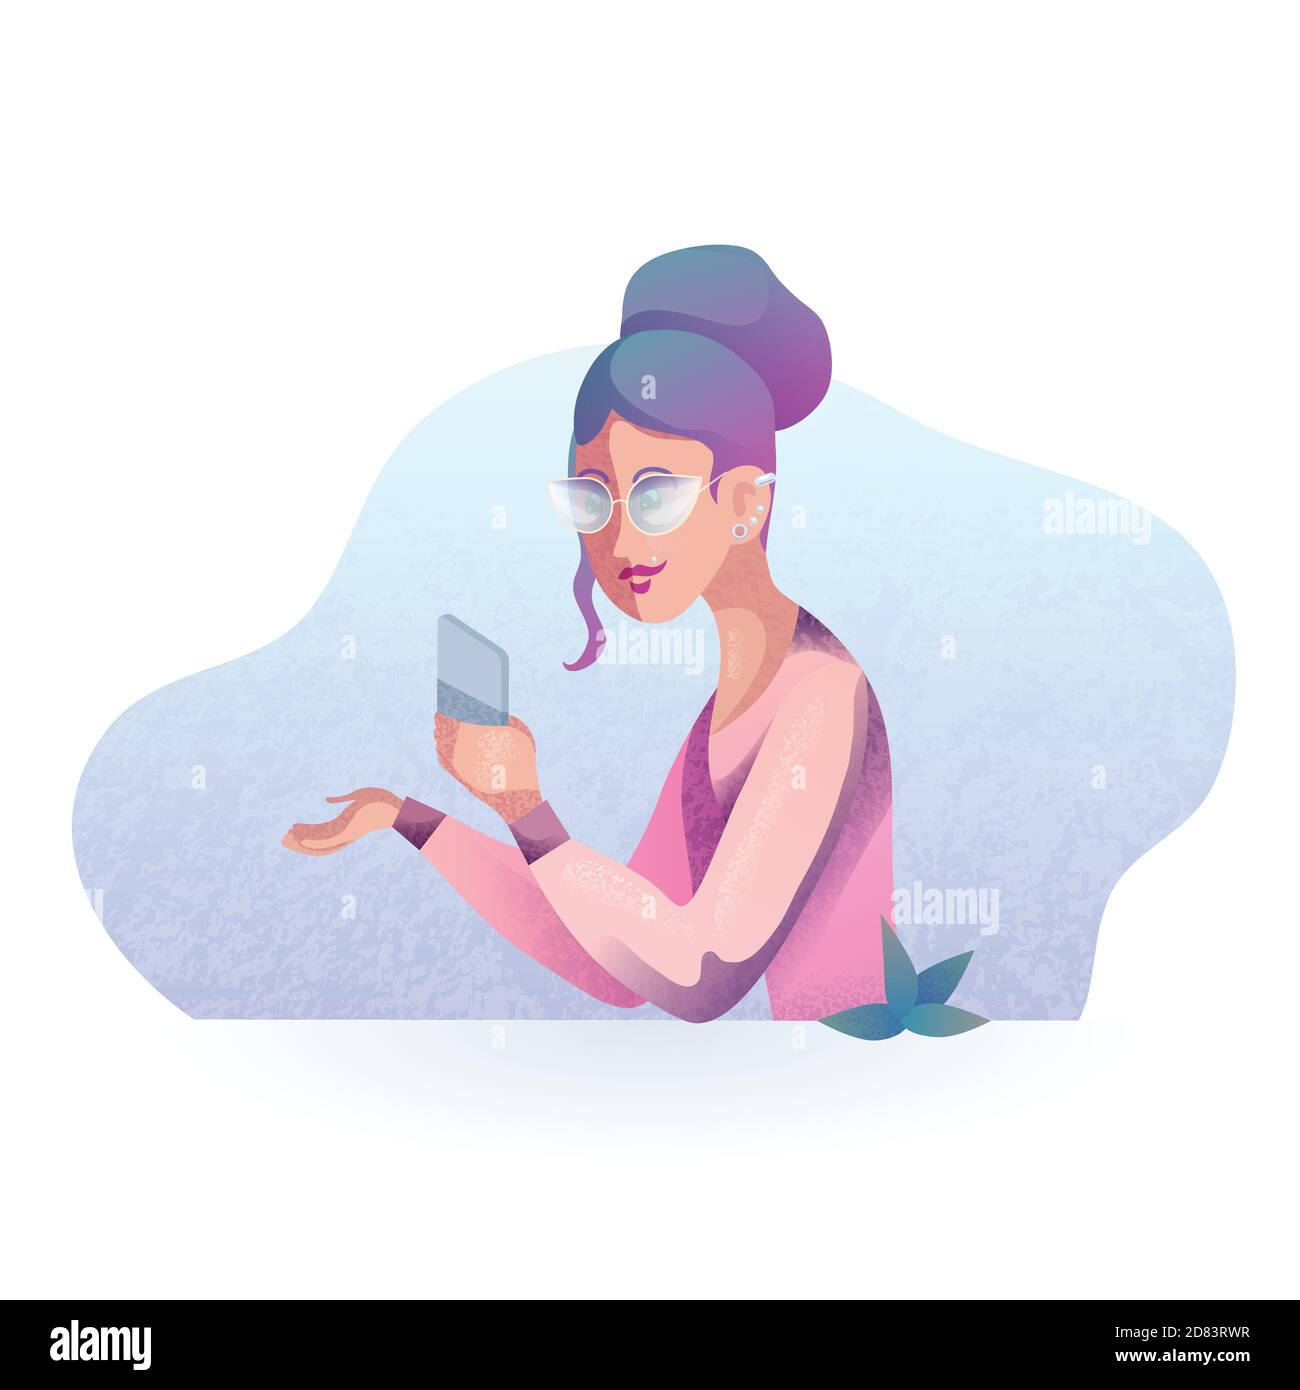 Immagine vettoriale di una ragazza hipster con telefono cellulare in stile moderno. Illustrazione stilizzata vettoriale per la vostra creatività. Illustrazione Vettoriale